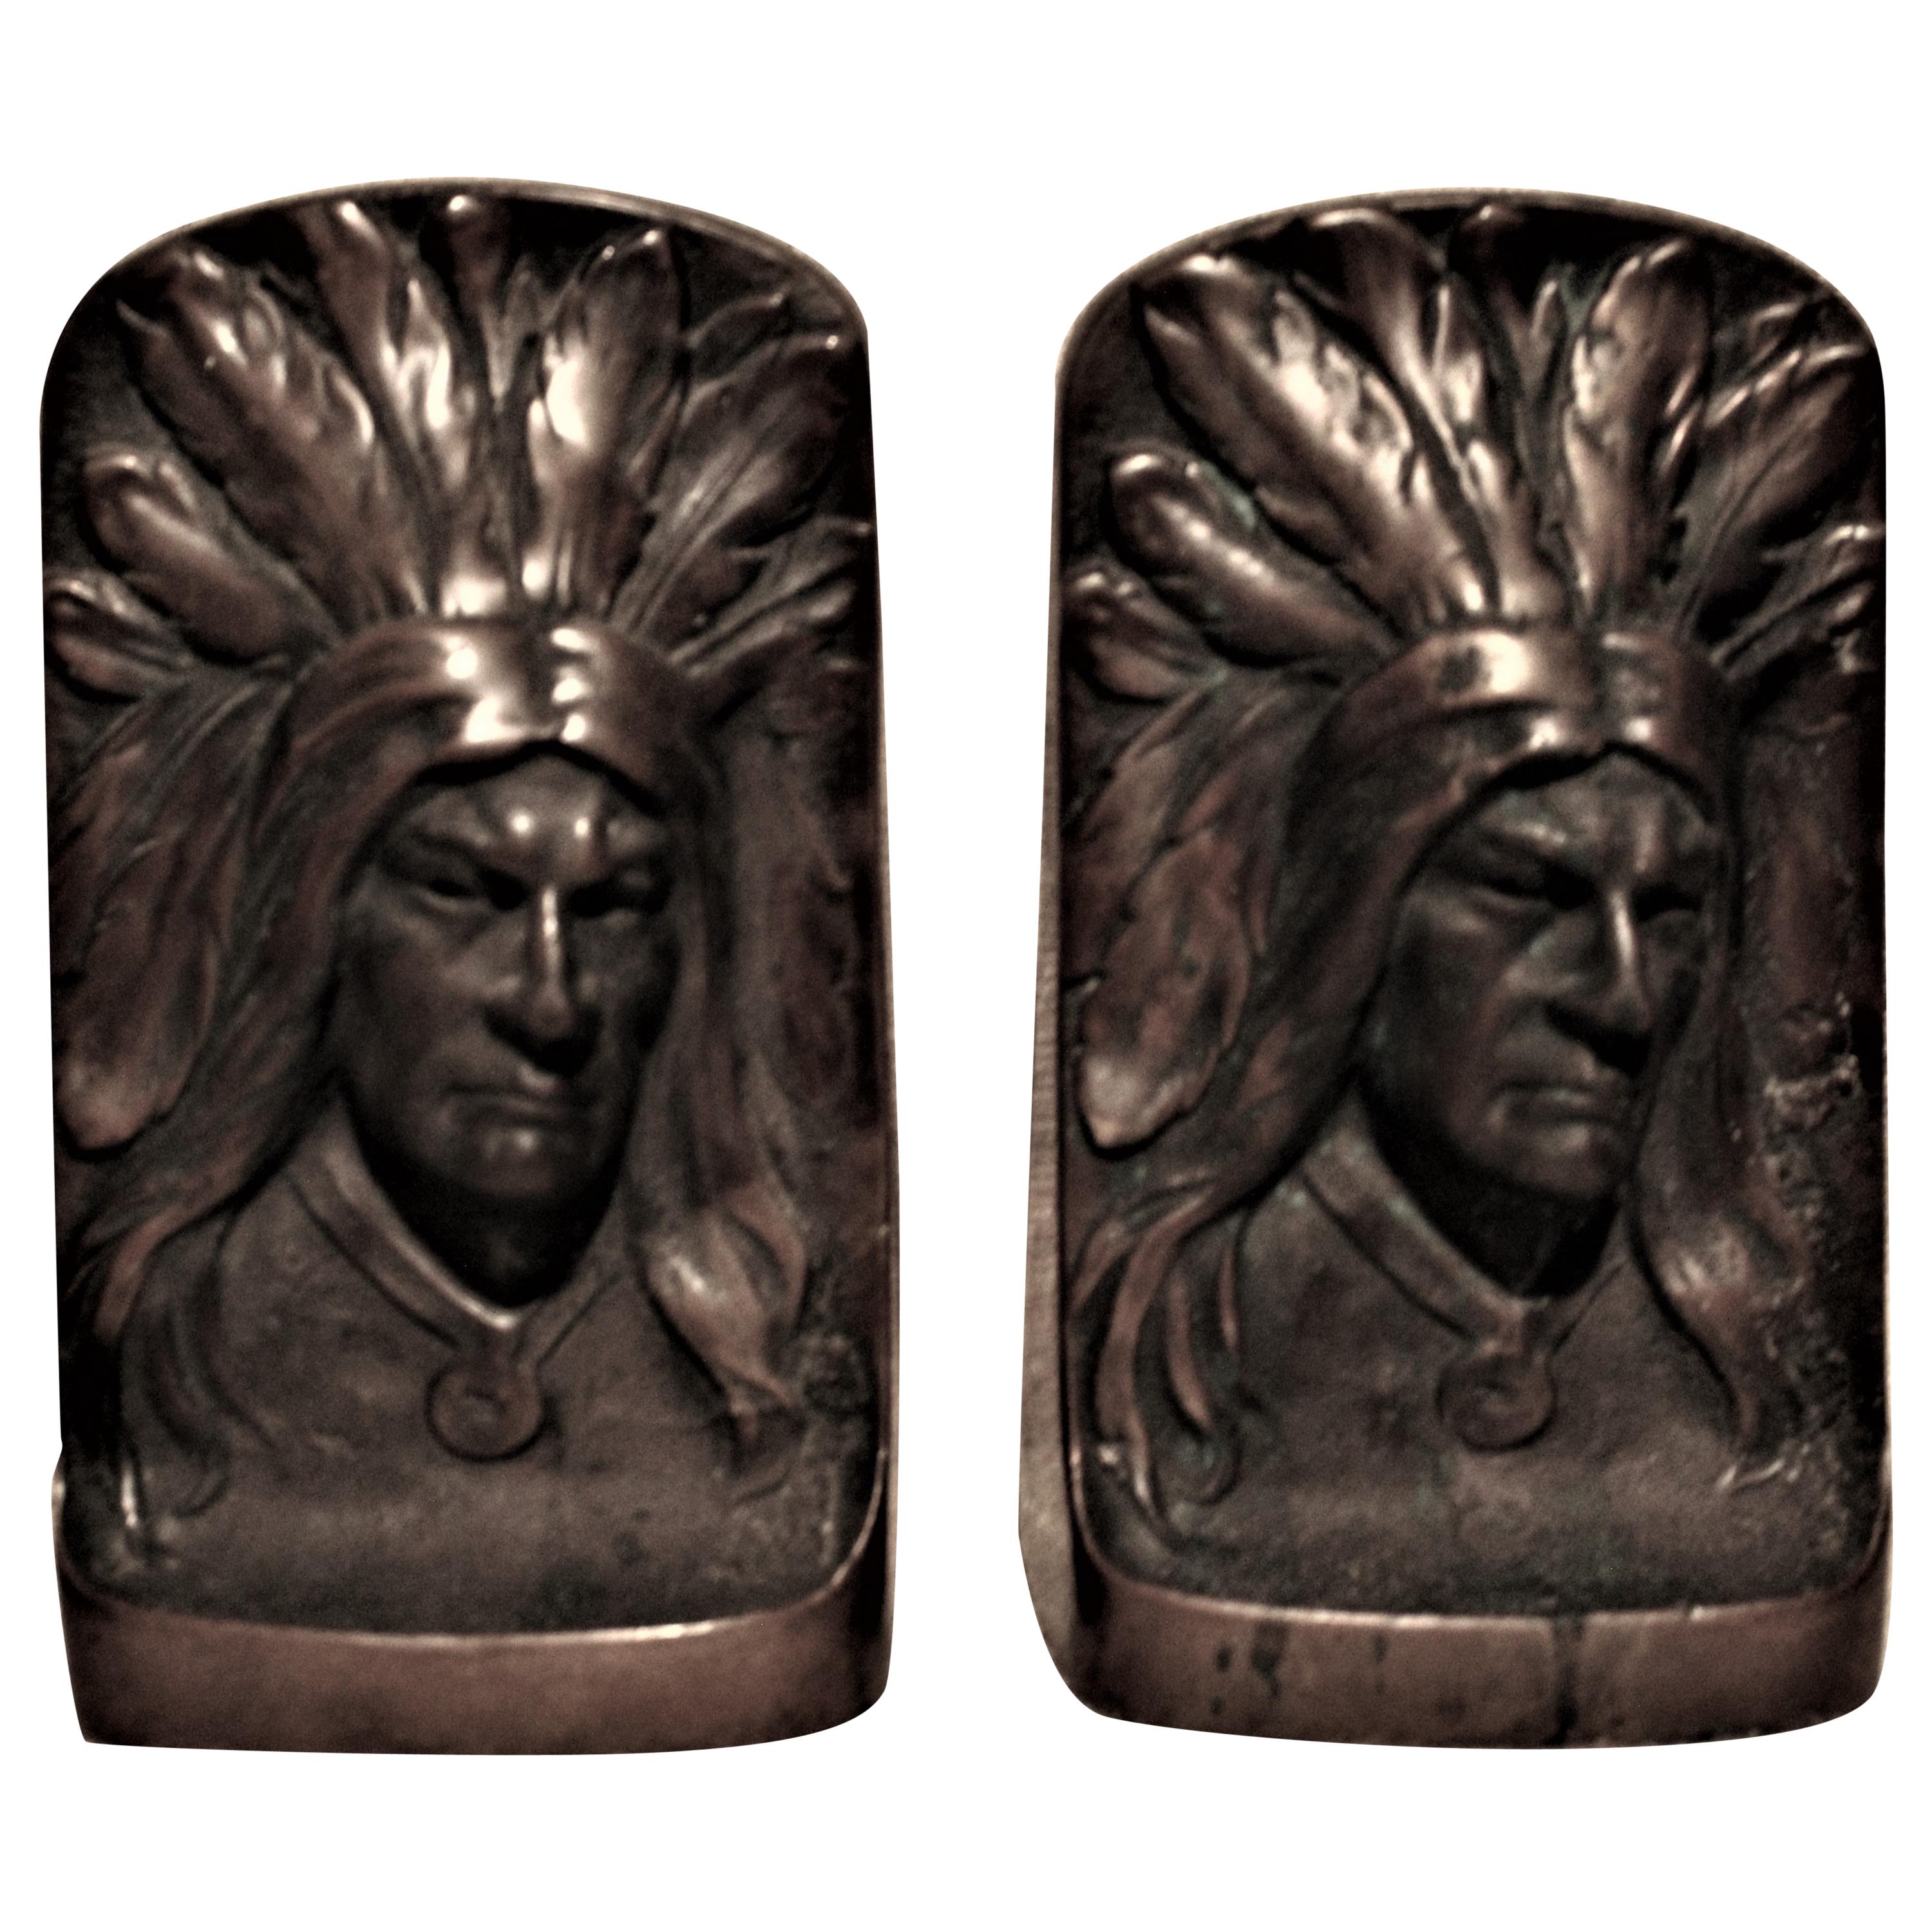 Paar skulpturale Vintage-Buchstützen aus Bronzeguss, Native American Indian Chief, Chief